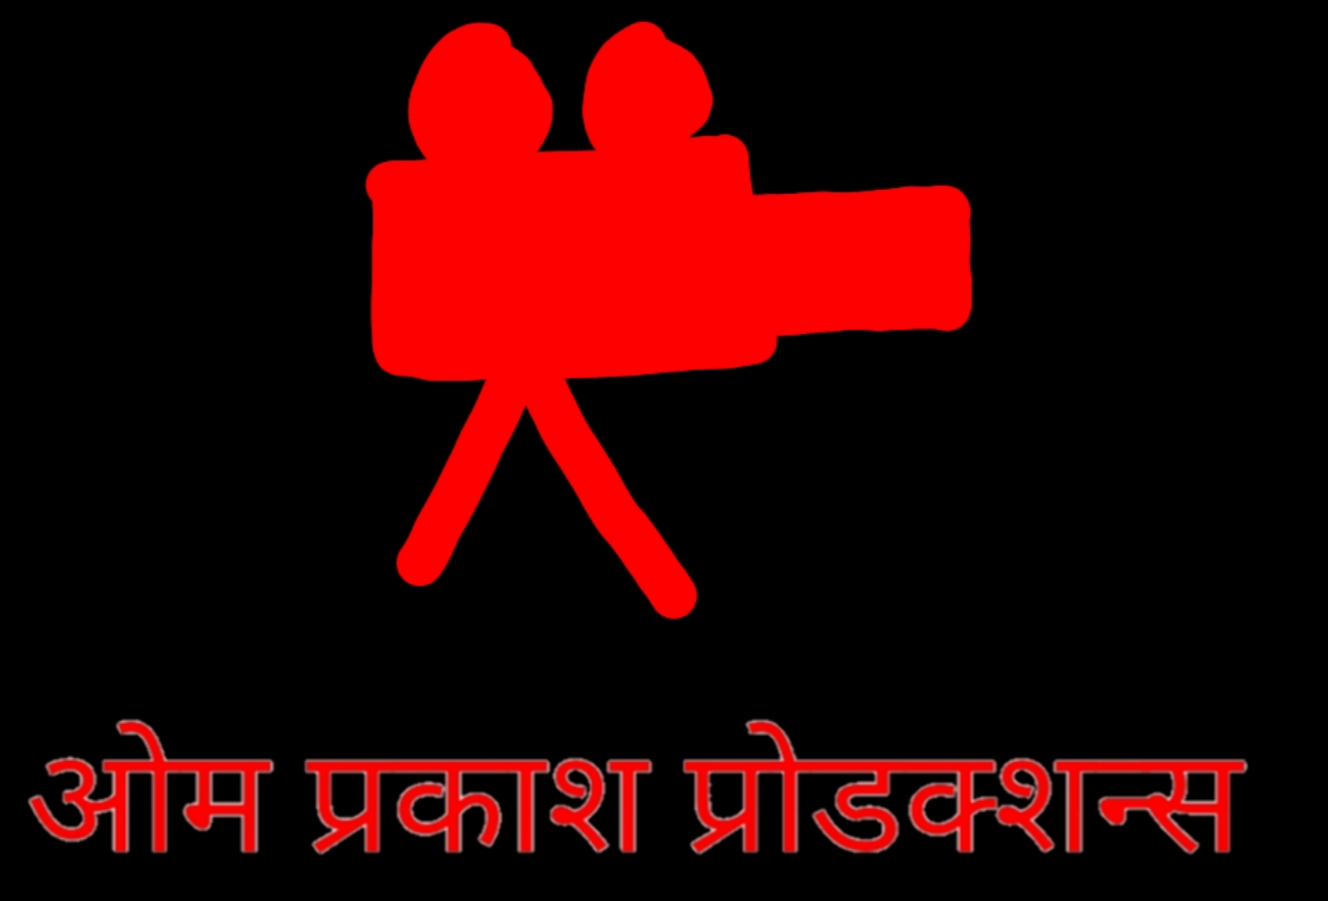 Logo by Om Prakash Ratawal